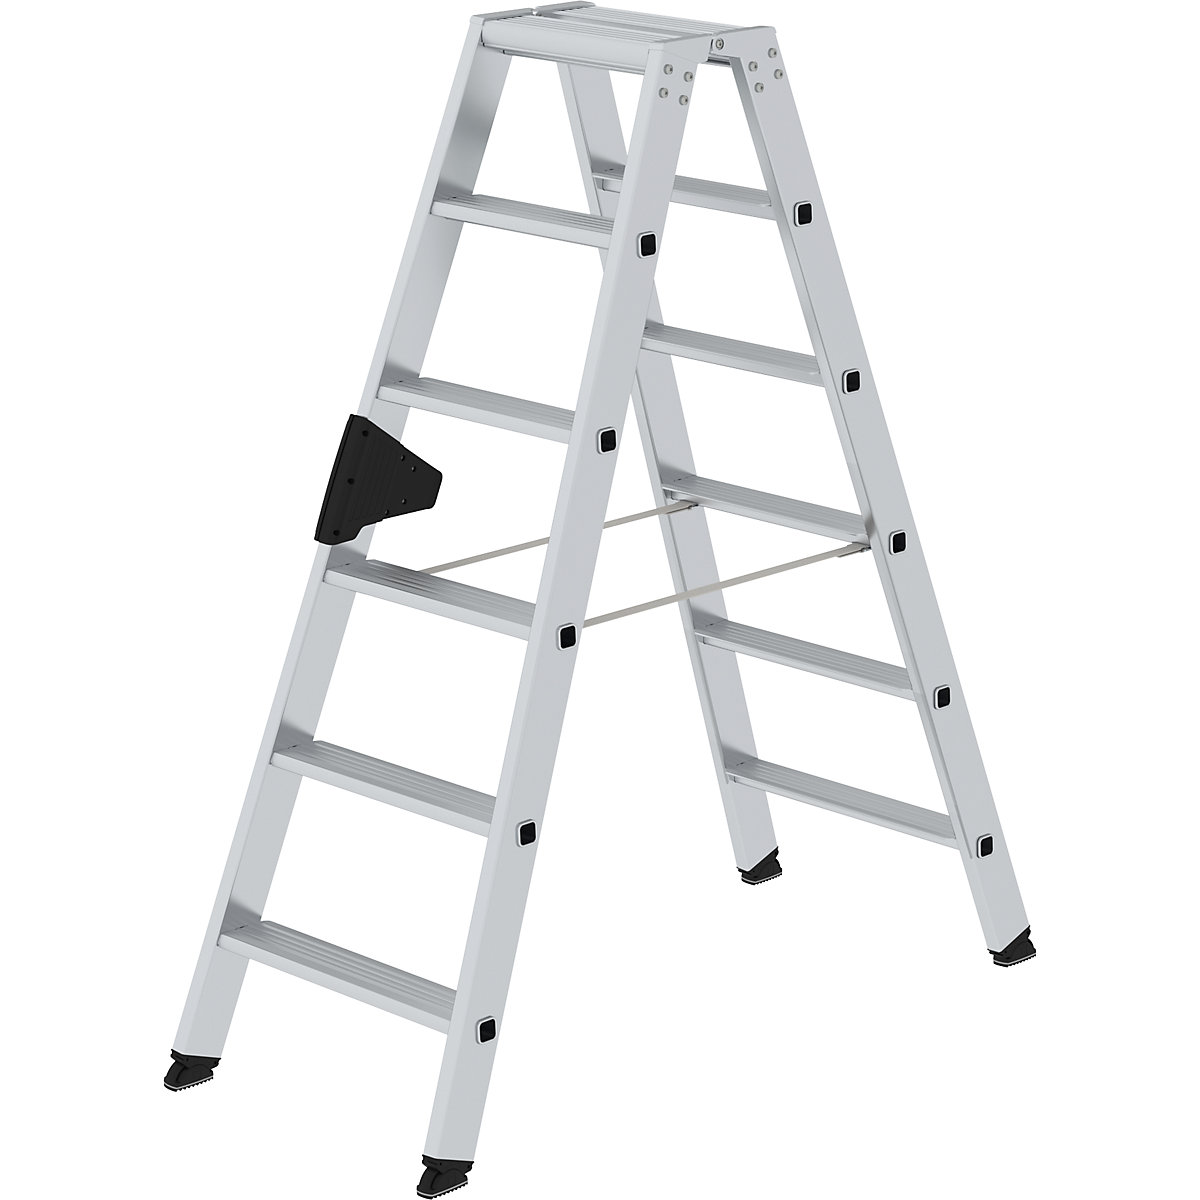 MUNK Stufen-Stehleiter, beidseitig, Komfort-Ausführung mit ergo-pad®, 2 x 6 Stufen